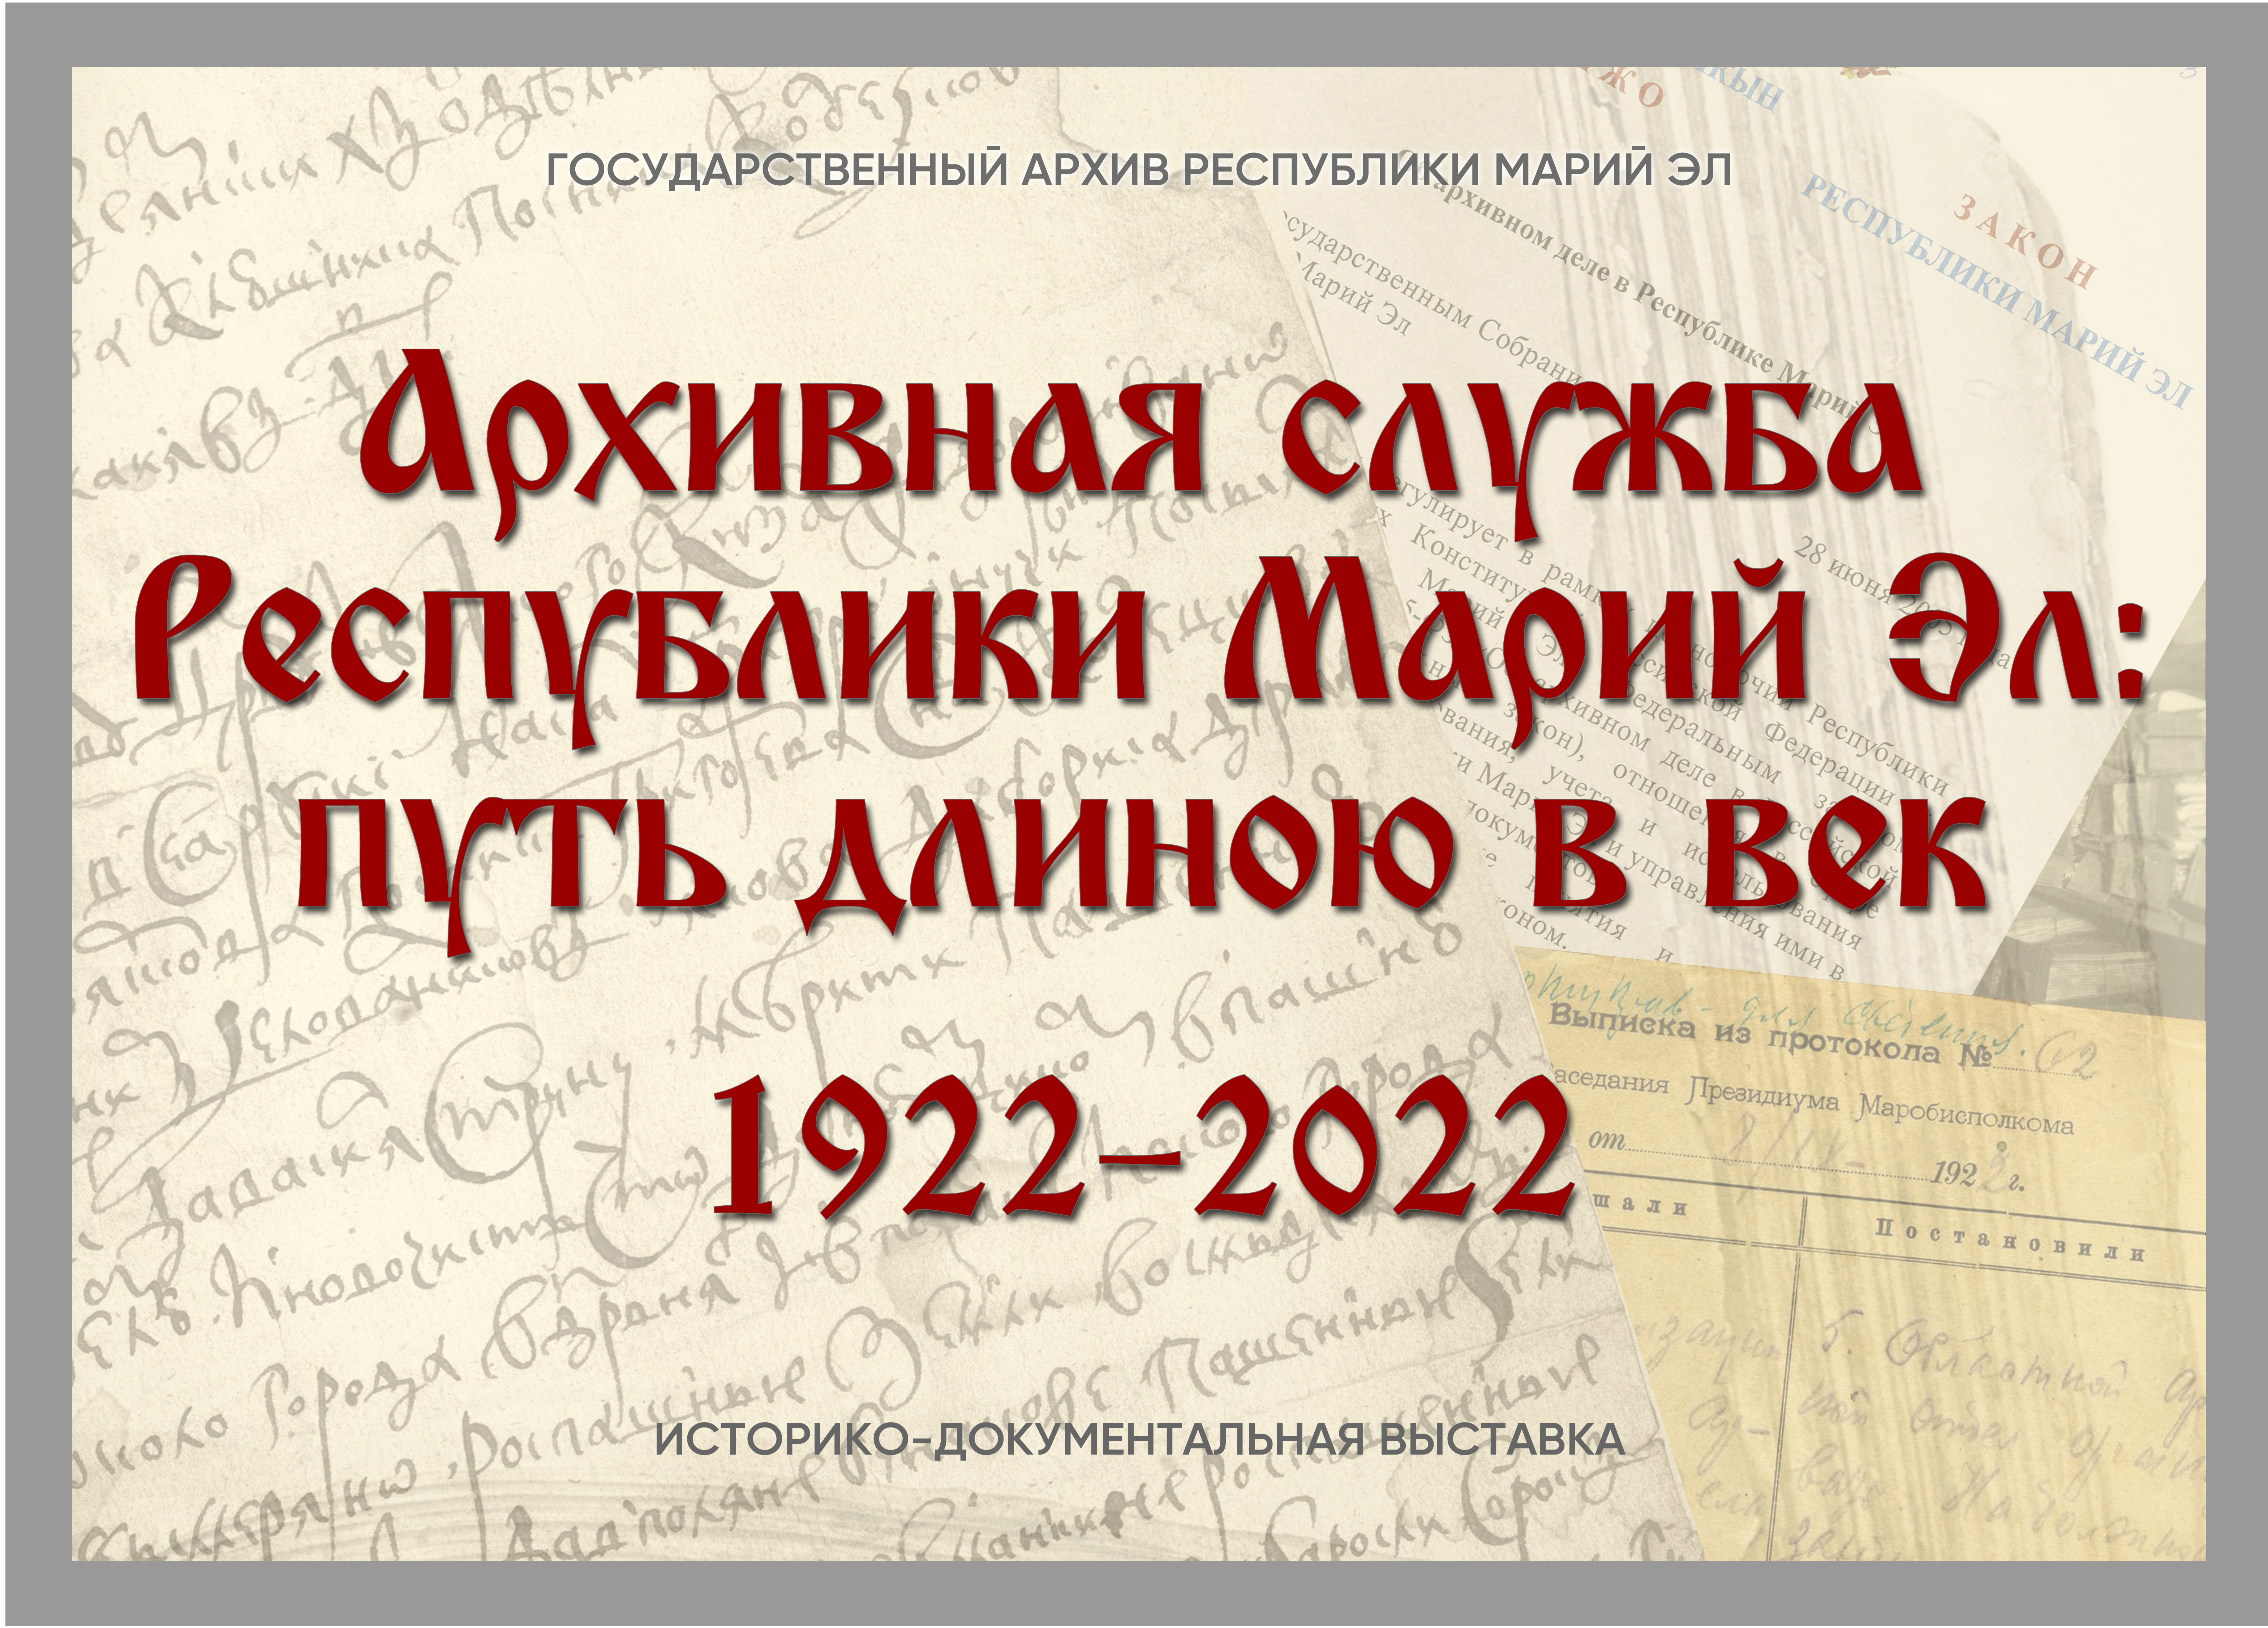 «Архивная служба Республики Марий Эл: путь длиною в век»